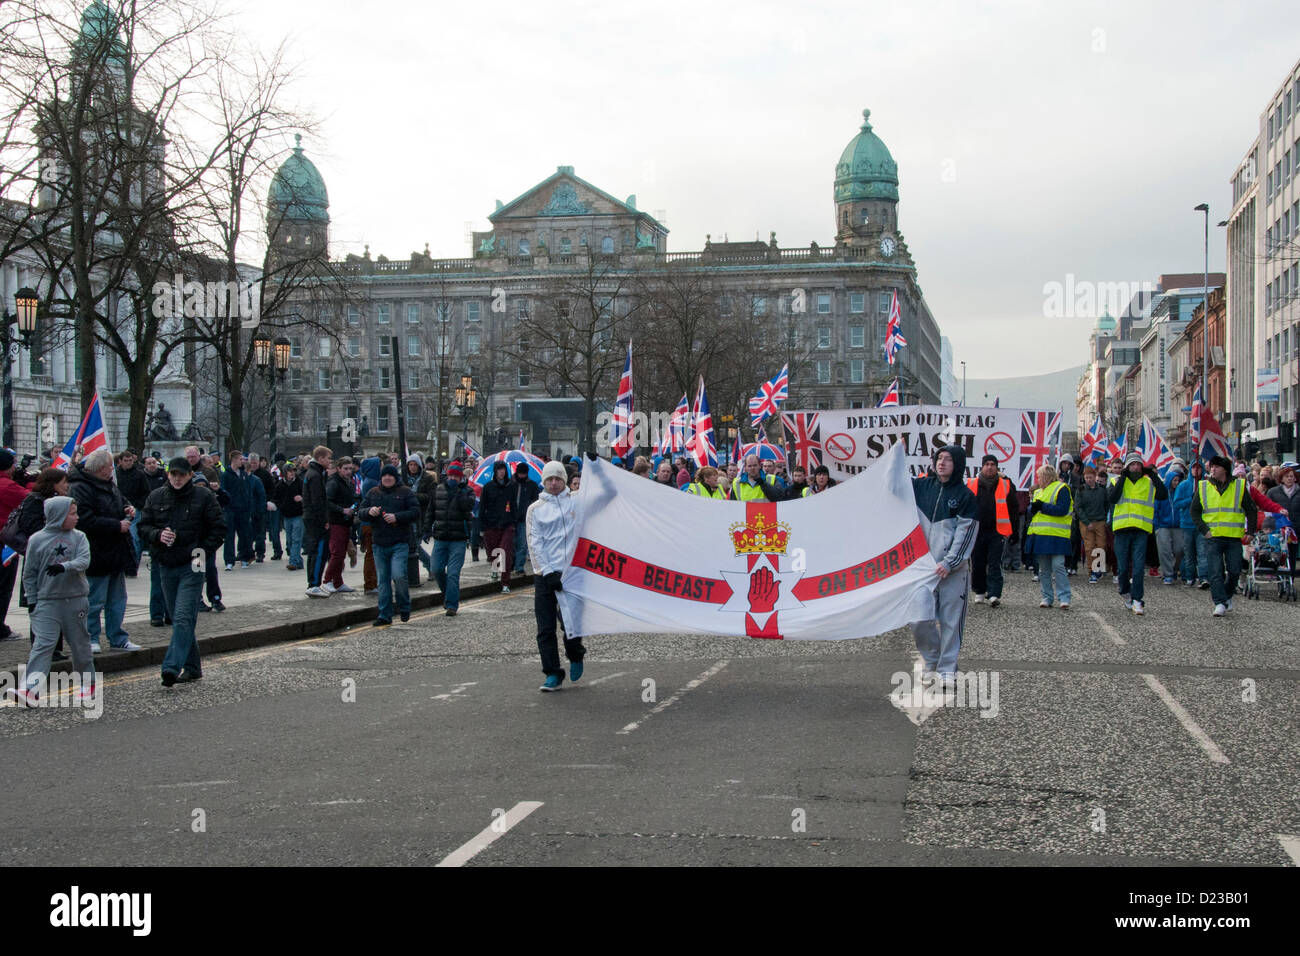 Belfast, UK. 12. Januar 2013 Welle Loyalist Demonstranten Union Fahnen und Banner vor der Belfast City Hall. Die Demonstranten fordern die Anschluß-Markierungsfahne am Rathaus ständig zu steigern. Später RANDALIEREN brach in Belfast Borough von Castlereagh. Stockfoto